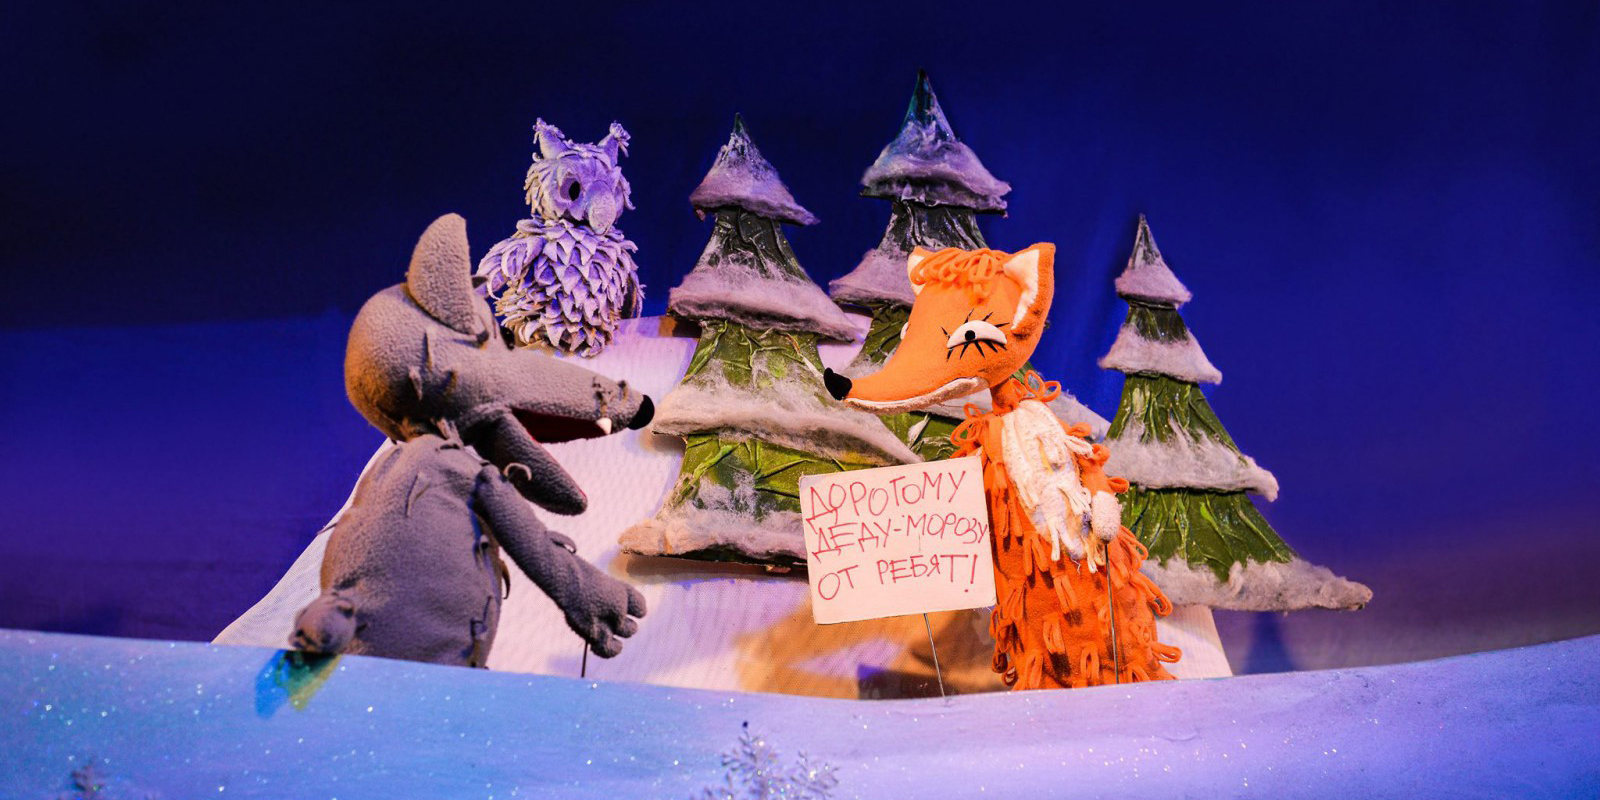 «Волшебство новогодней сказки»: интерактивная выставка откроется в Могилеве 21 декабря